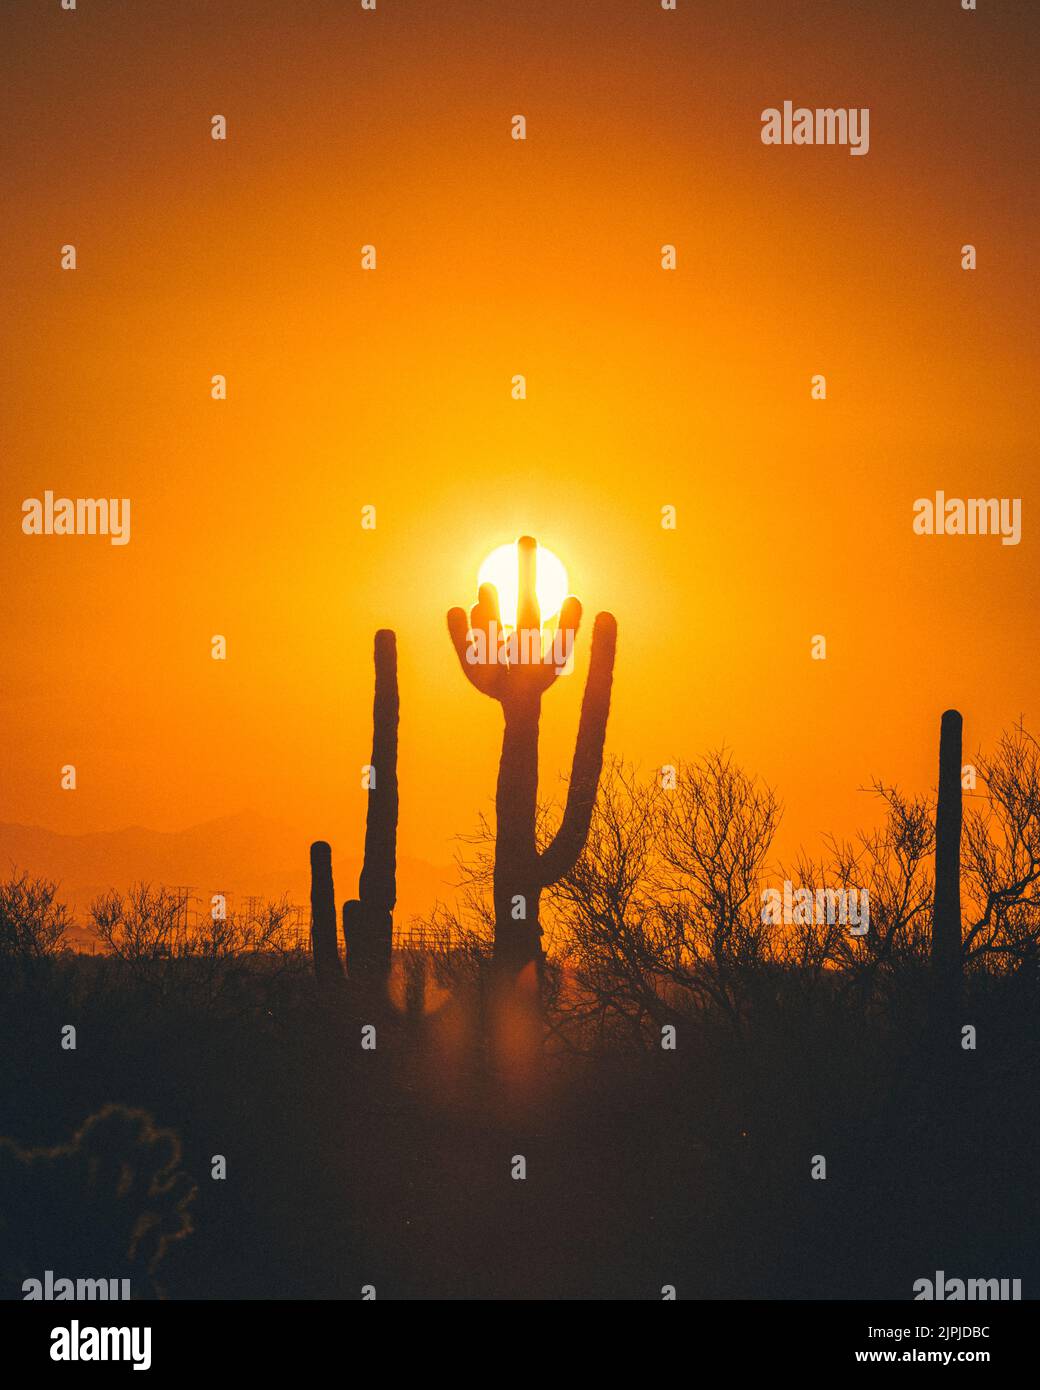 Cactus silhouettes in the Arizona mountains Stock Photo - Alamy